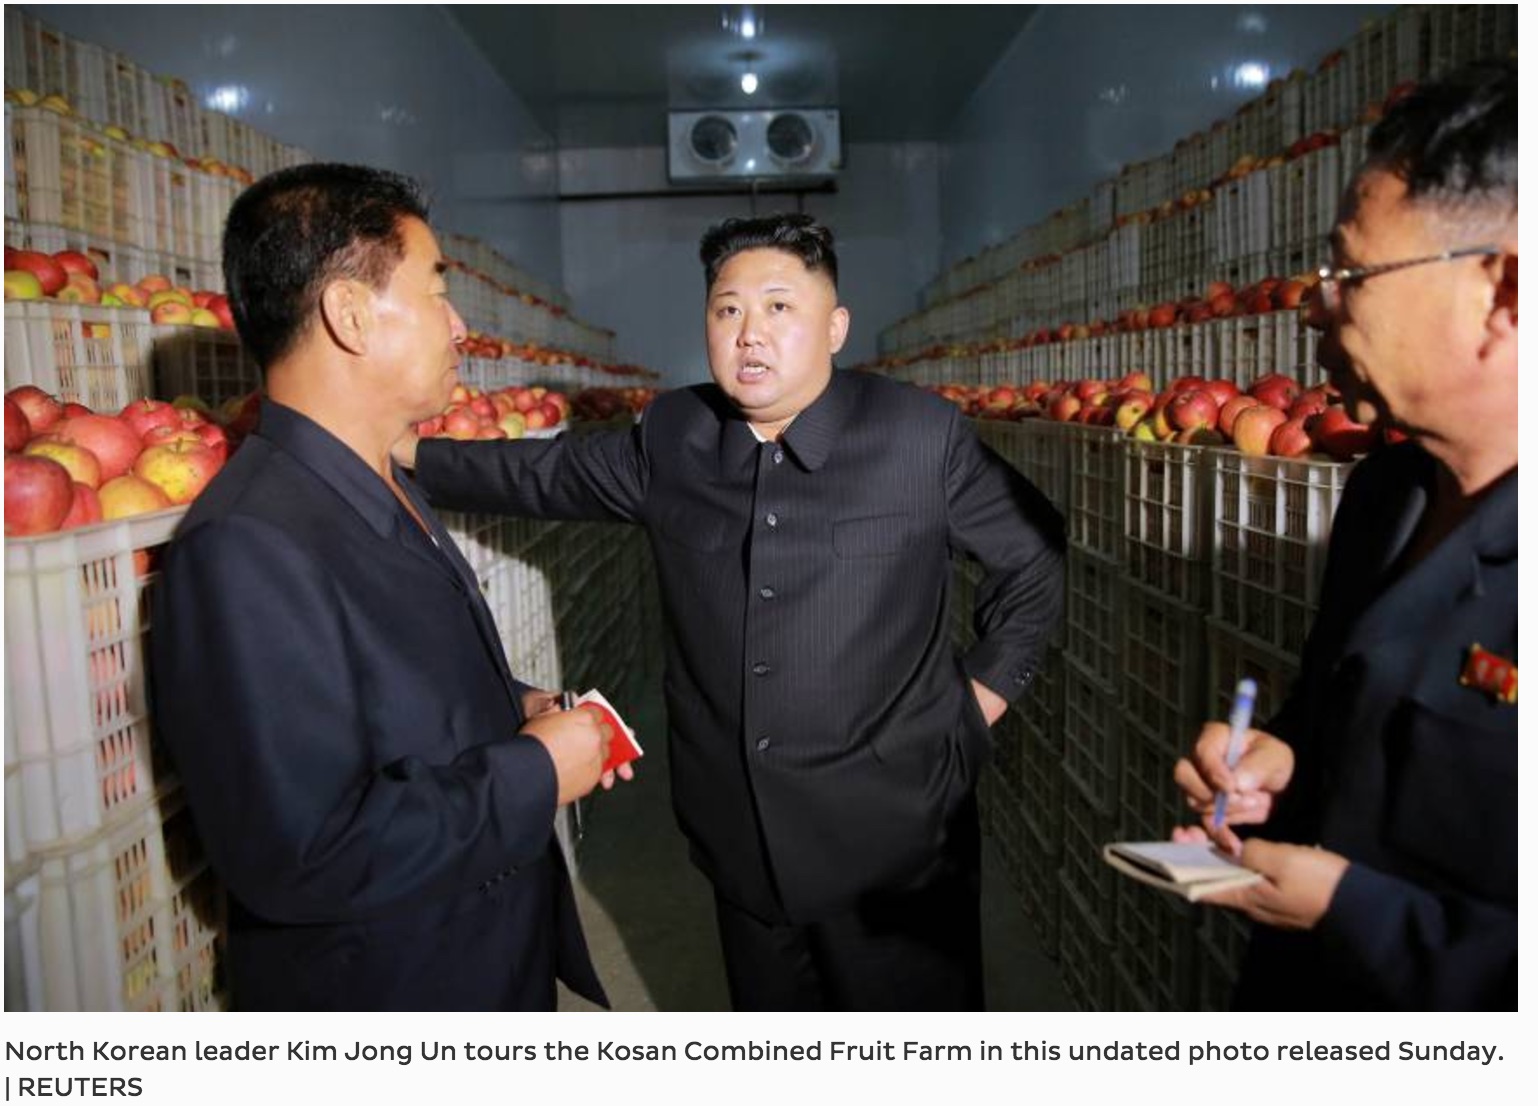 le leader nord-coréen Kim Jong-un, lors d'une visite de terrain dans une ferme collective de Kosan. Copie d'écran du Japan Times, le 21 septembre 2016